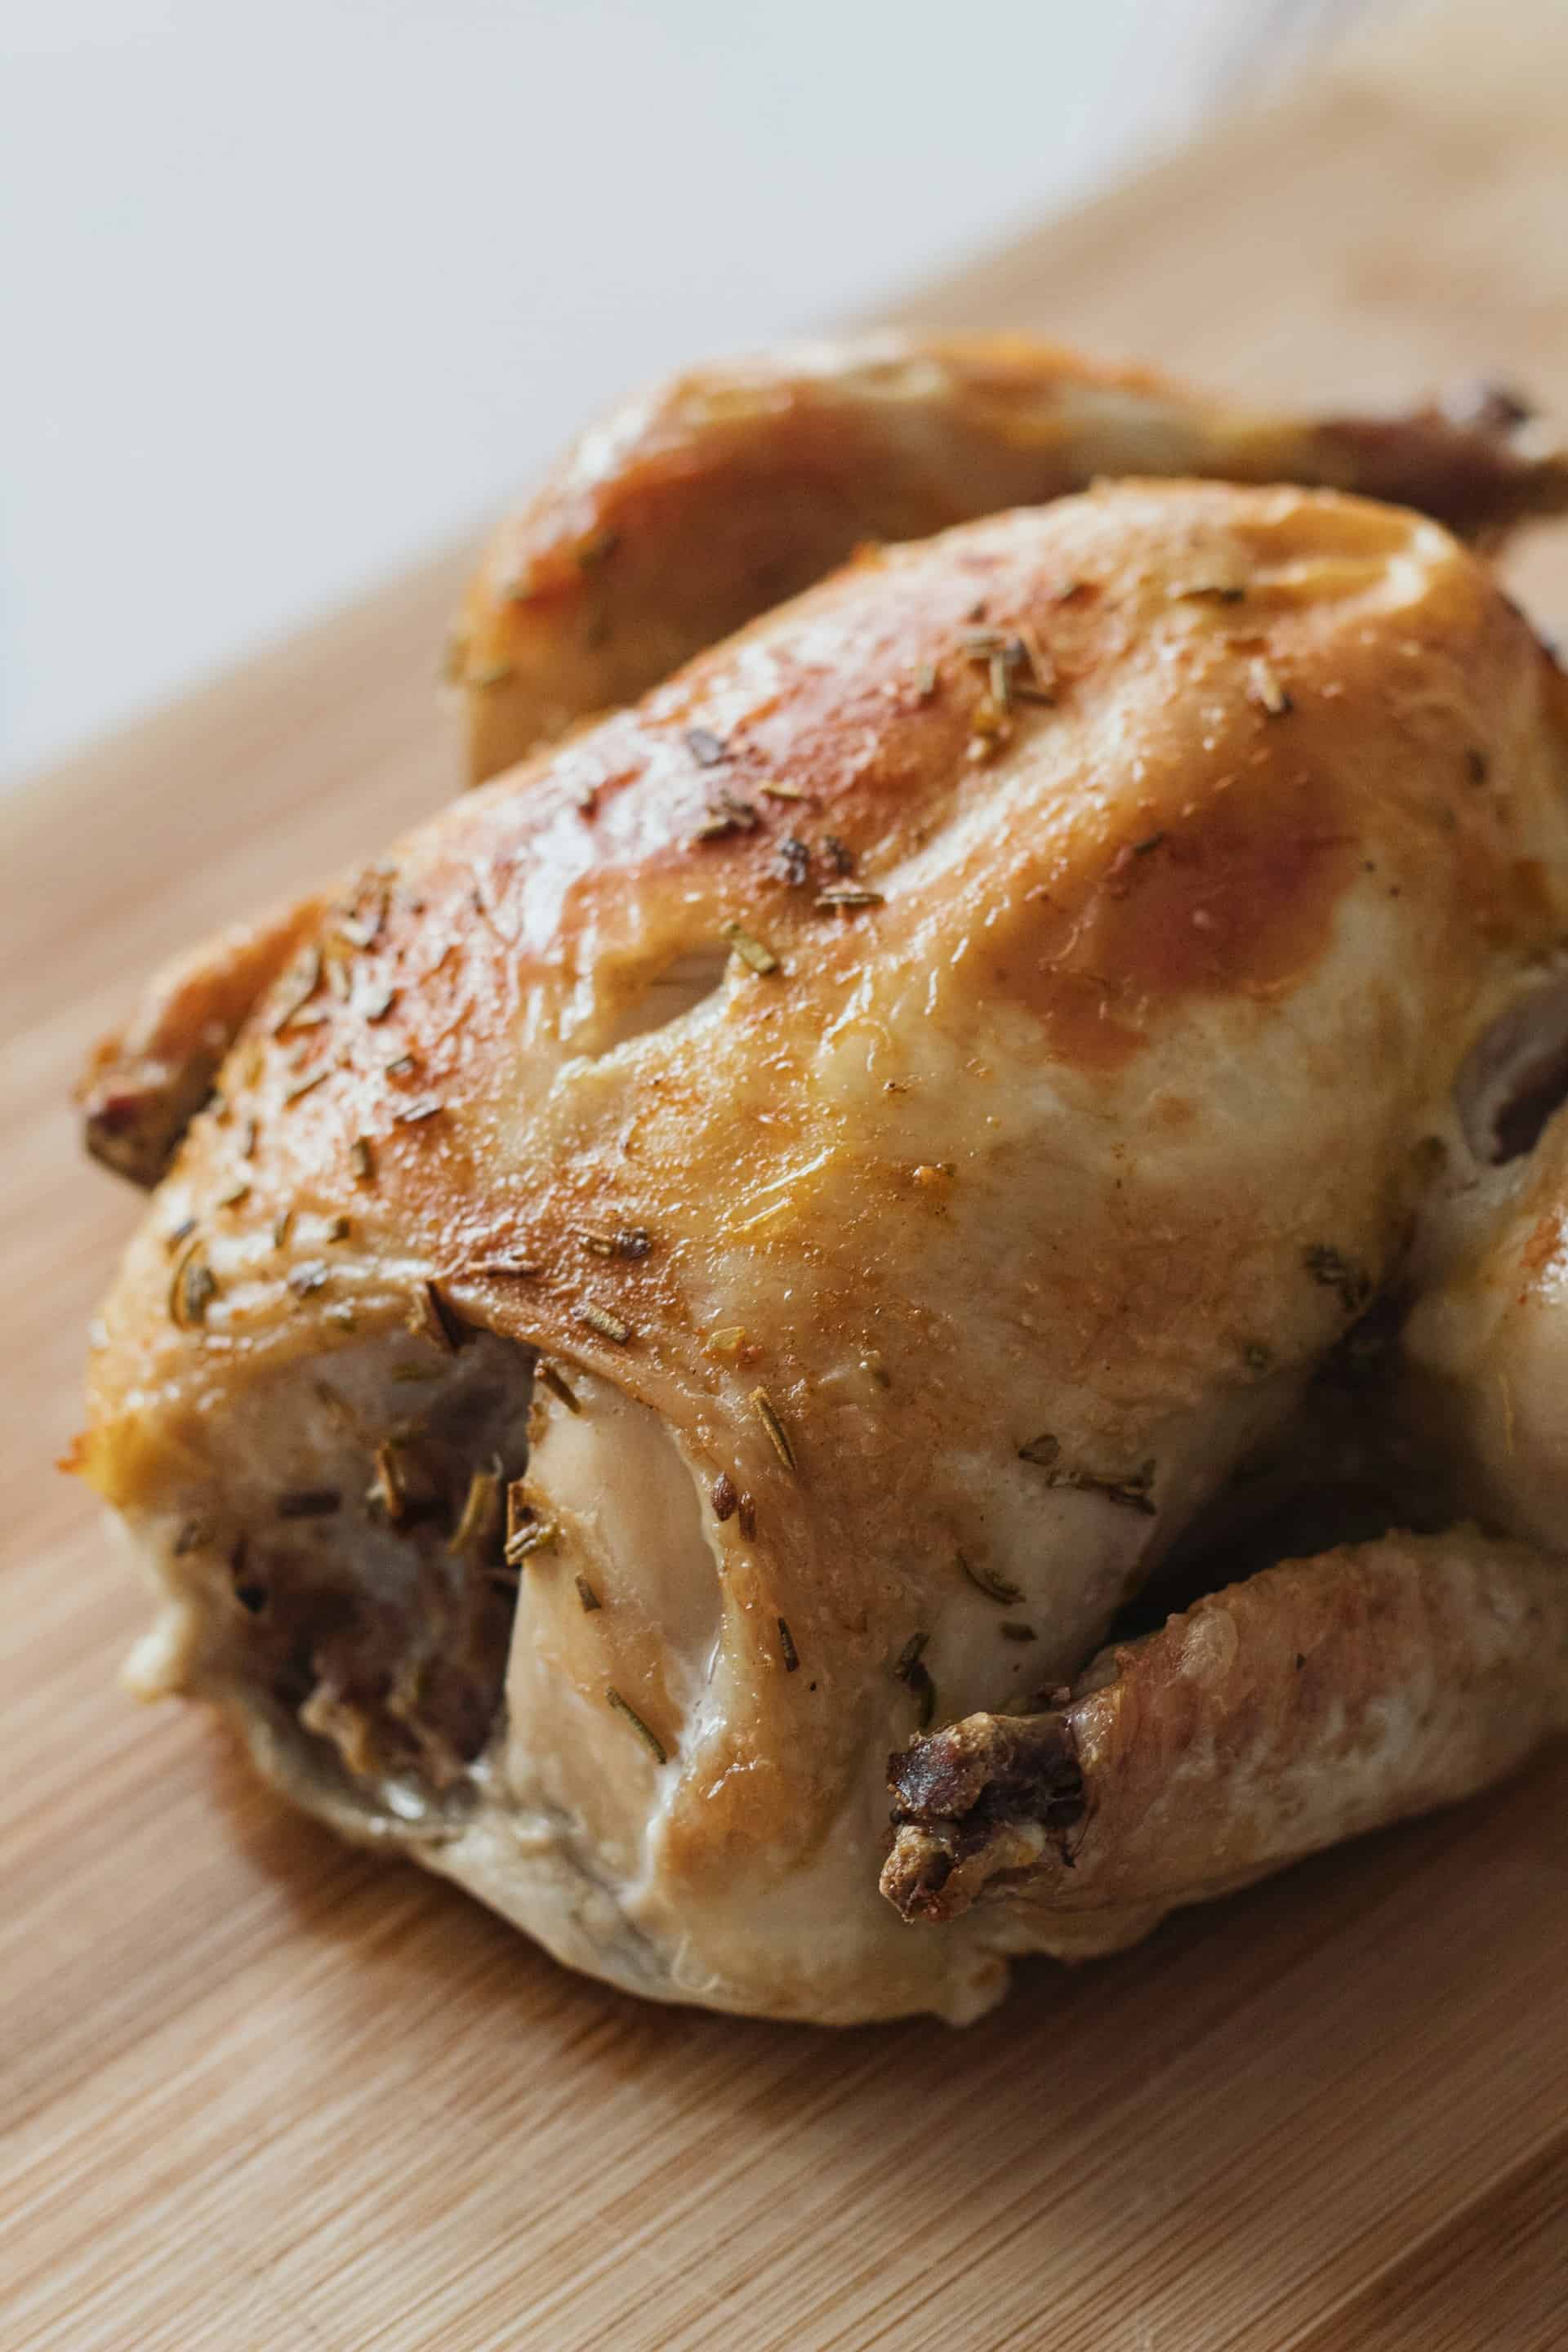 Курица с хрустящей корочкой в духовке - рецепты с фото